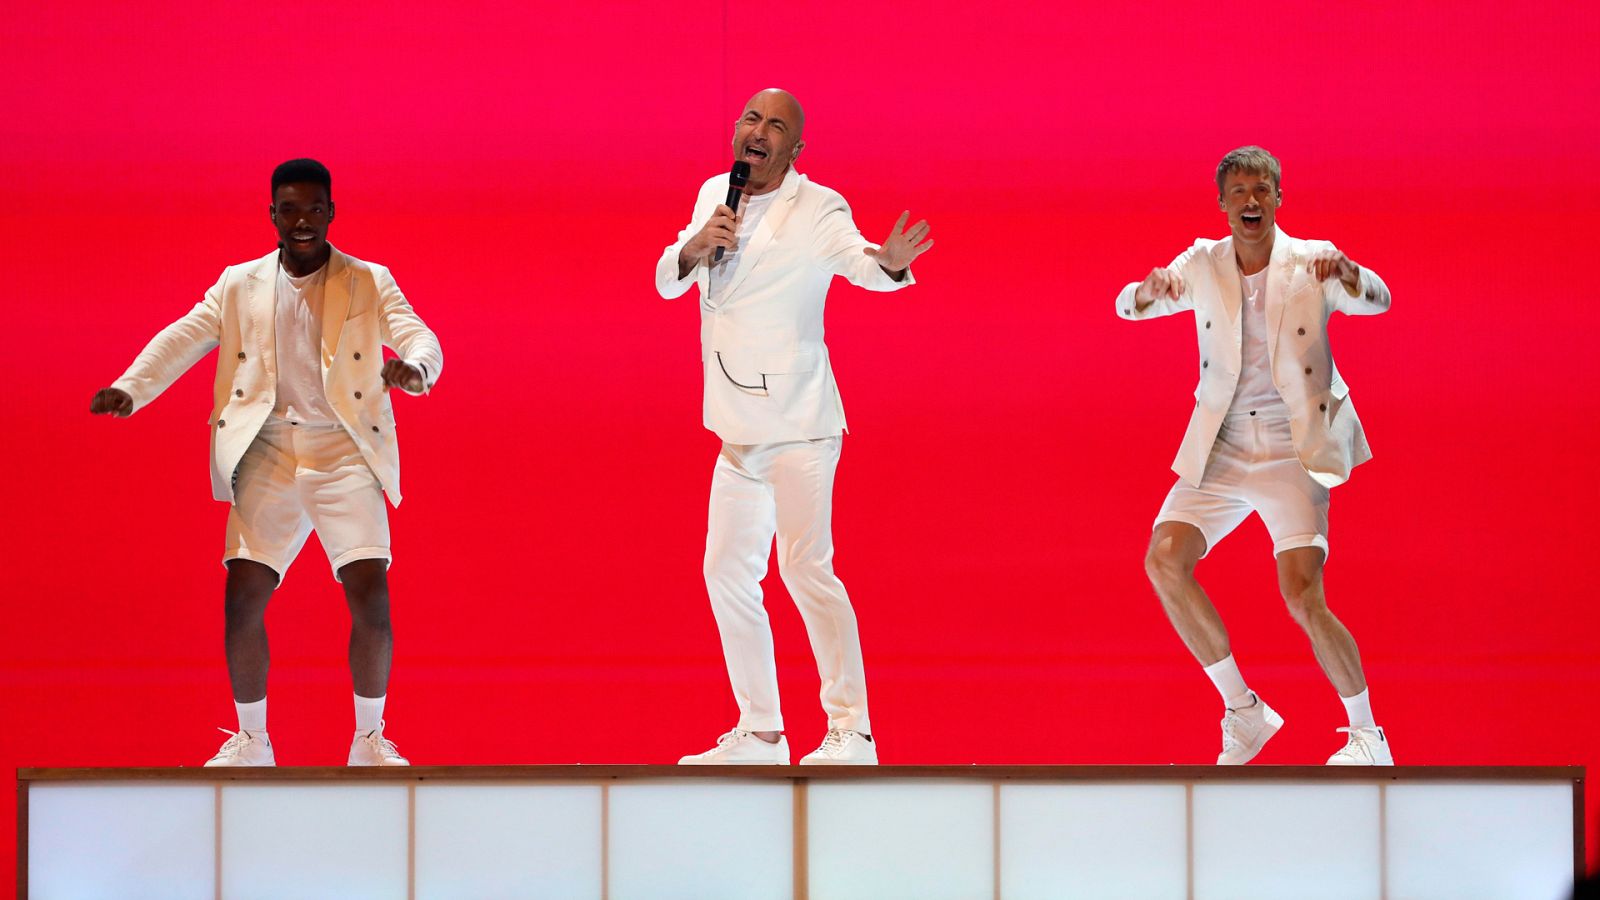 Eurovisión 2019 - San Marino: Serhat canta "Say Na Na Na" en la primera semifinal